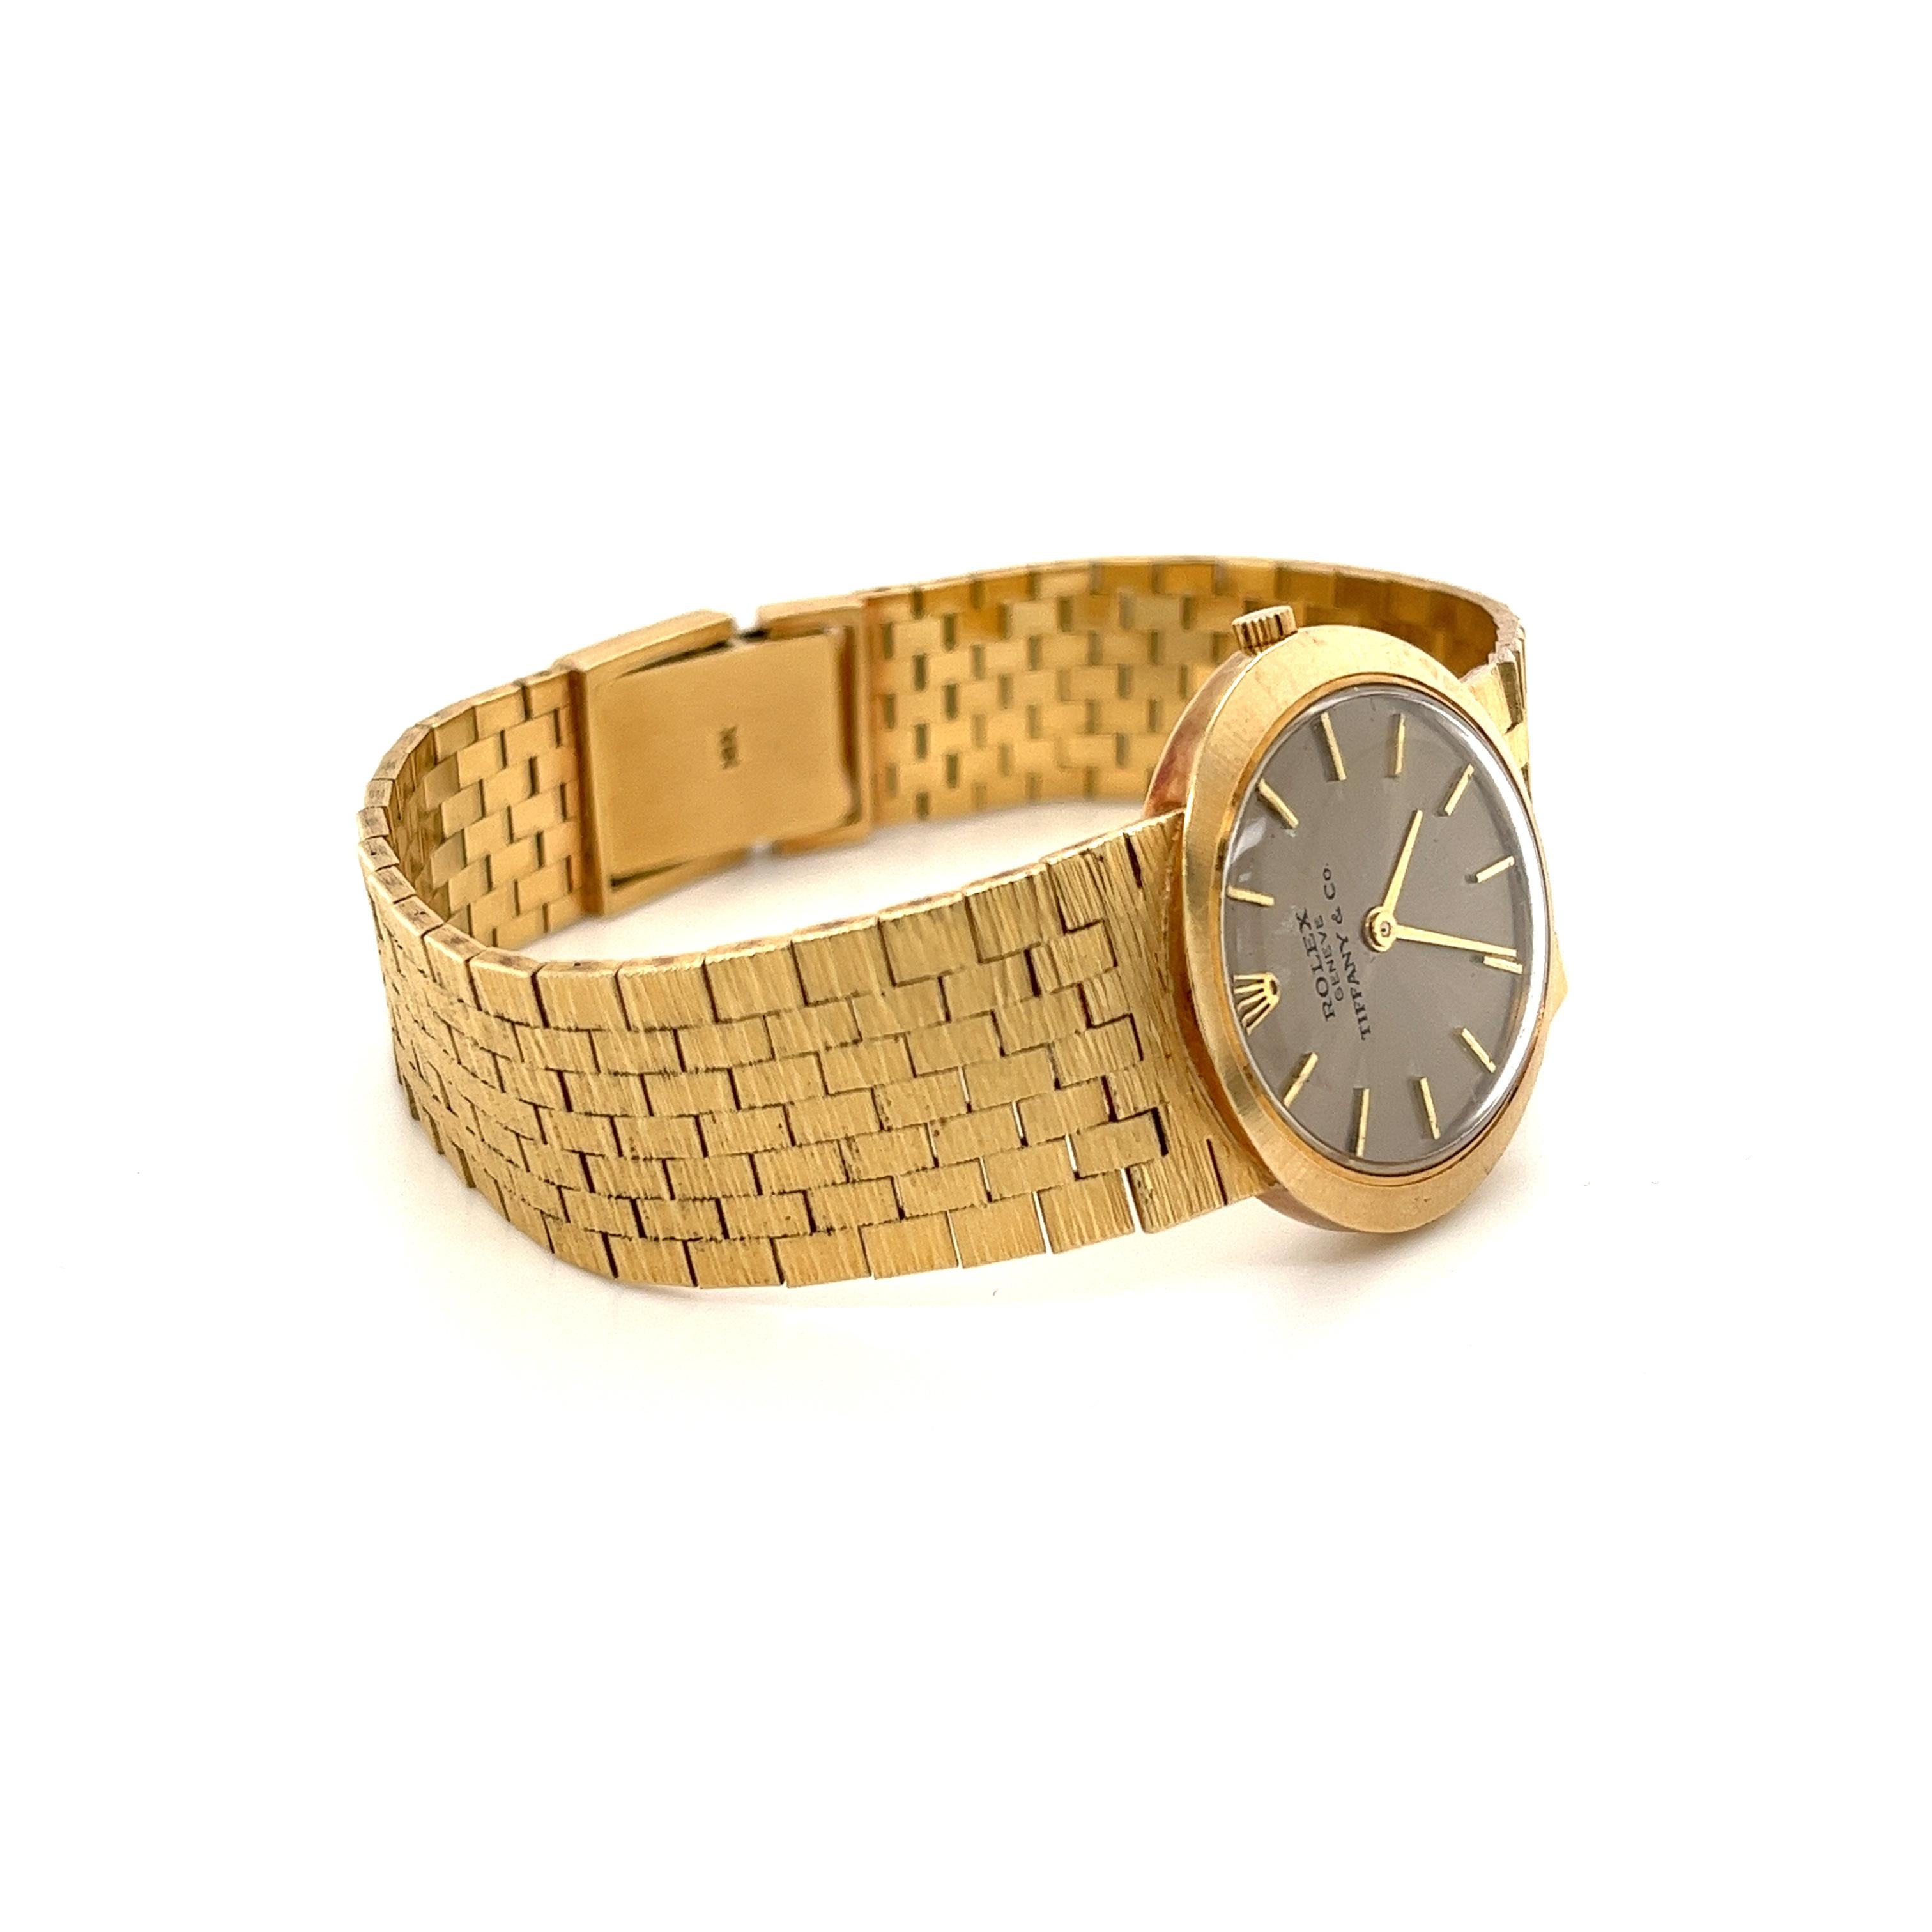 Vintage Rolex swiss-made Armbanduhr für Tiffany & Co,. Fachmännisch handgefertigt mit einem integrierten Armband aus massivem 14-karätigem Gelbgold. Ideal für den erfahrenen Uhrensammler und perfekt für diejenigen, die auf der Suche nach einer